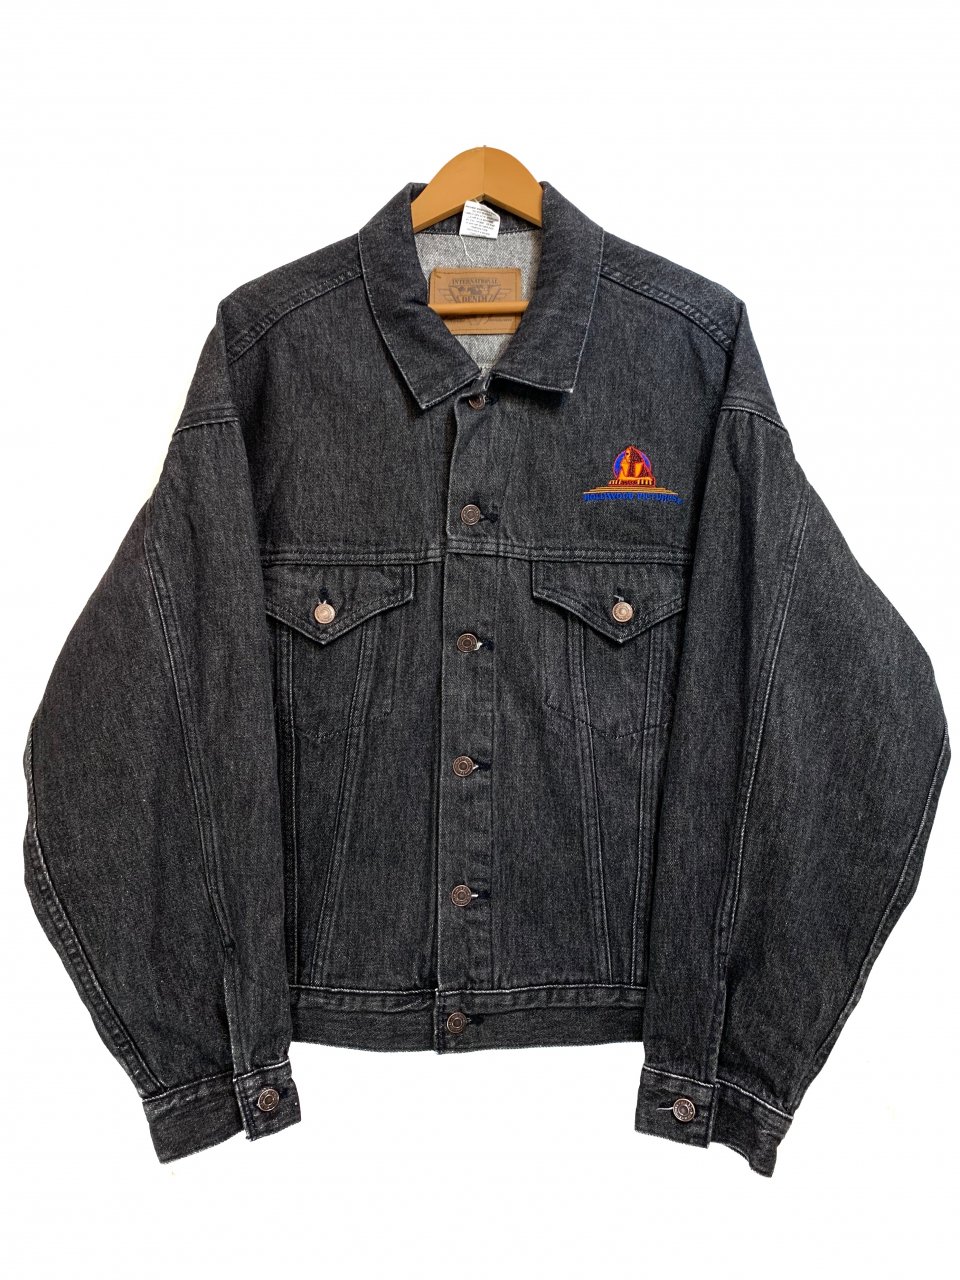 公式の 90s デザインデニムジャケット Gジャン/デニムジャケット 